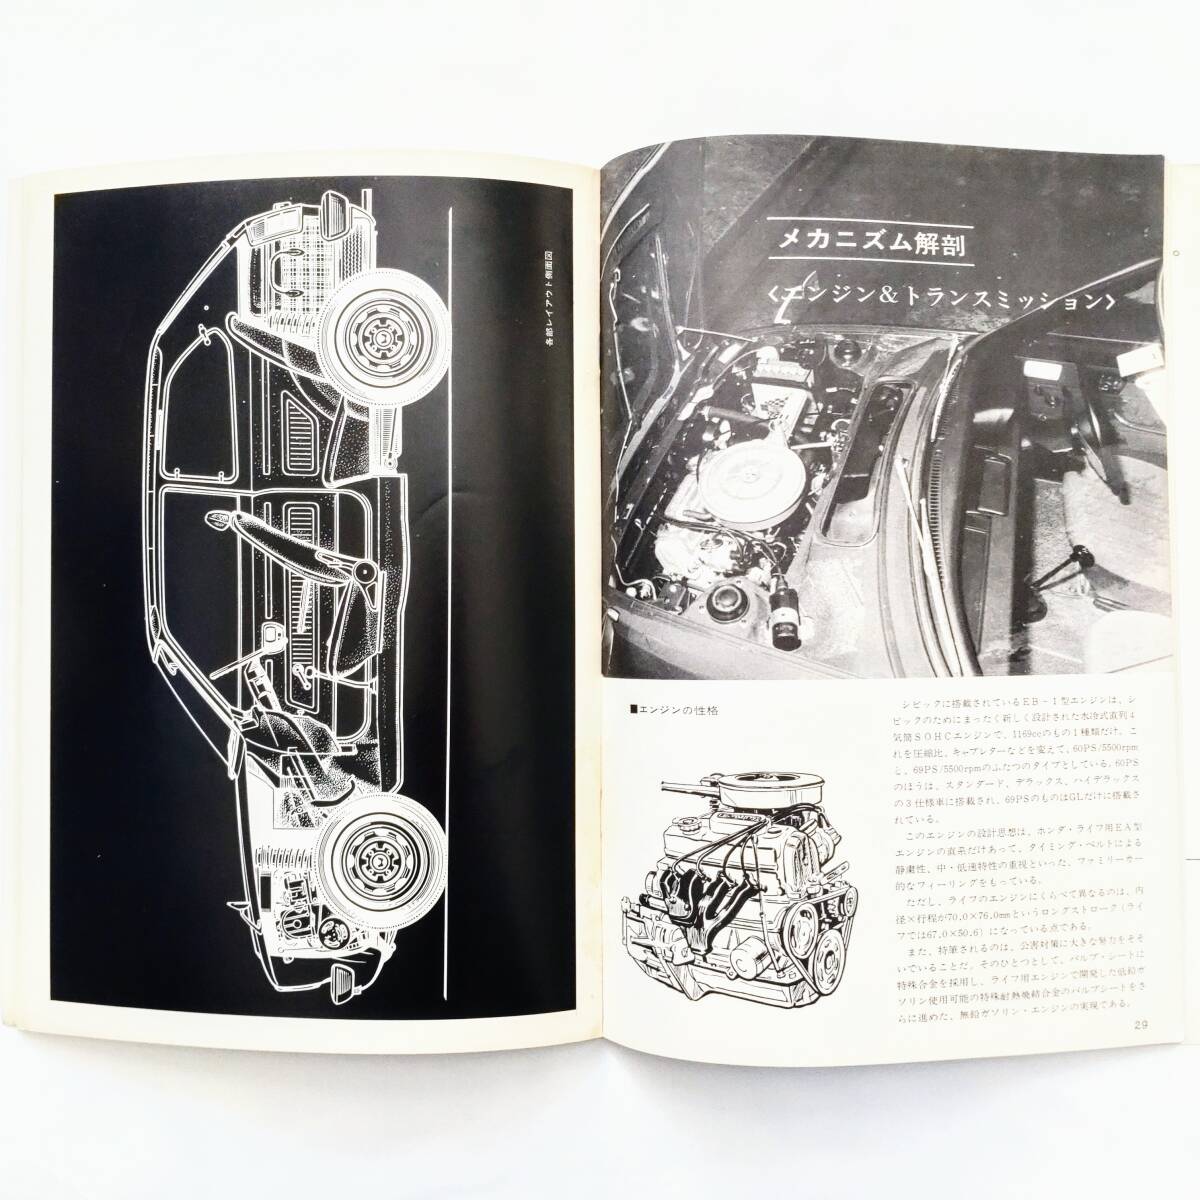  Motor Fan японский . произведение машина серии no. 2 сборник Honda Civic Showa 47 год выпуск кузов двигатель .. map есть 